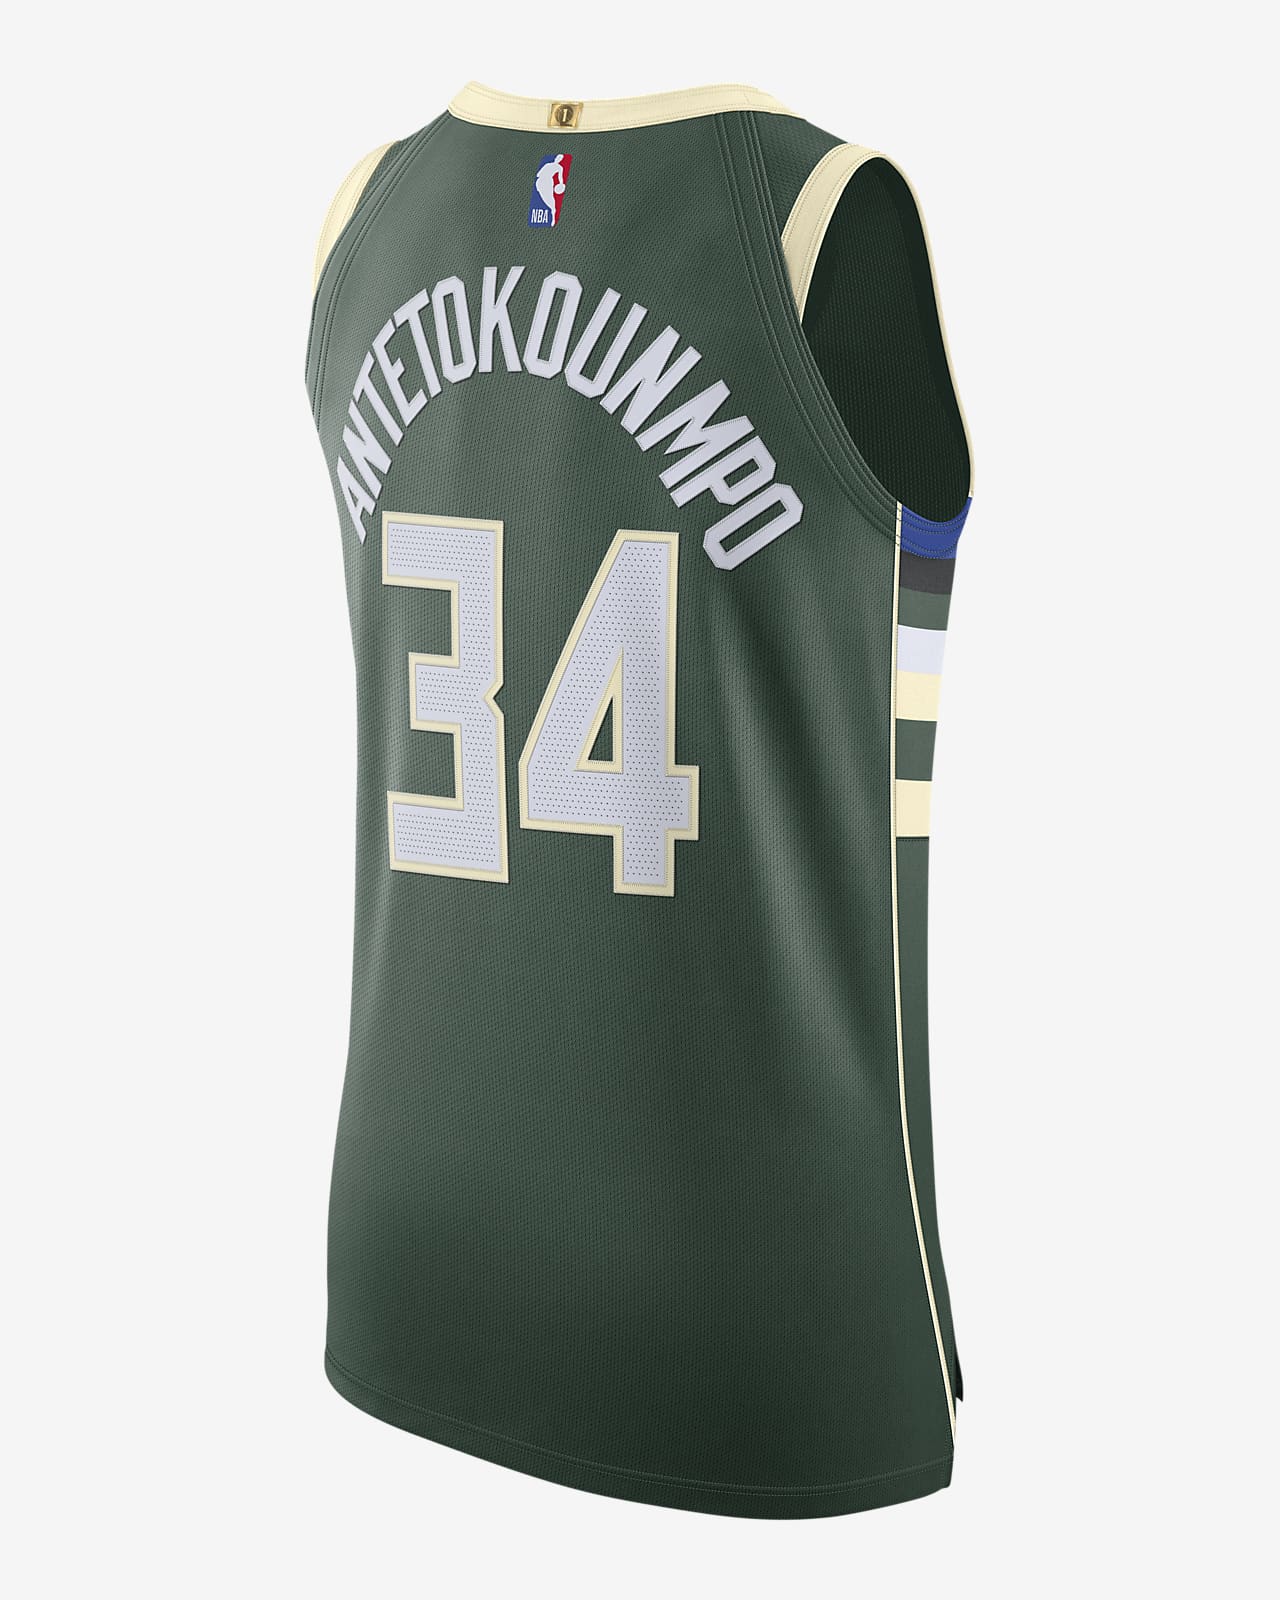 Nebu toxicidad Grave Giannis Antetokounmpo Bucks Icon Edition 2020 Camiseta Nike NBA Authentic.  Nike ES